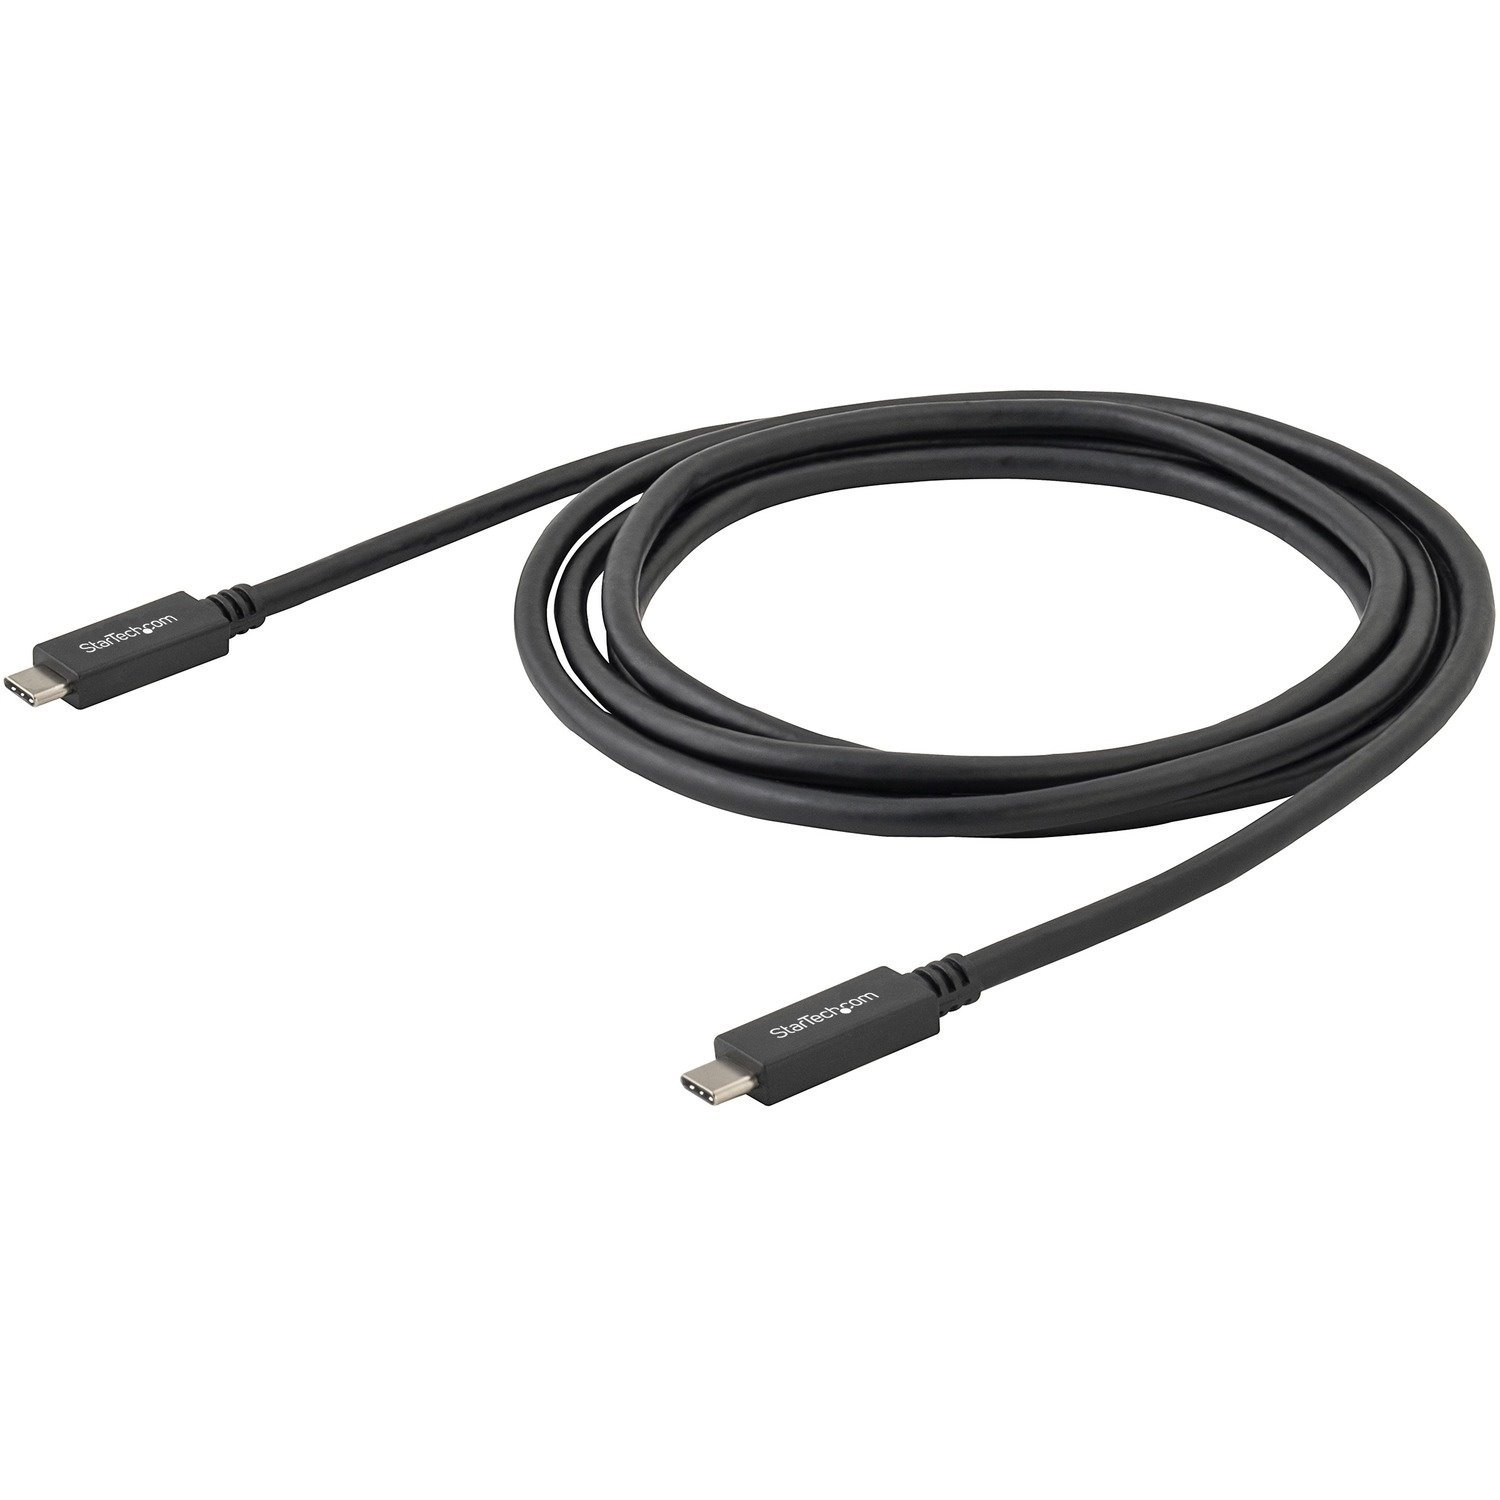 StarTech.com 0.5m USB C to USB C Cable - M/M - USB 3.1 Cable (10Gbps) - USB Type C Cable - USB 3.2 Gen 2 Type C Cable